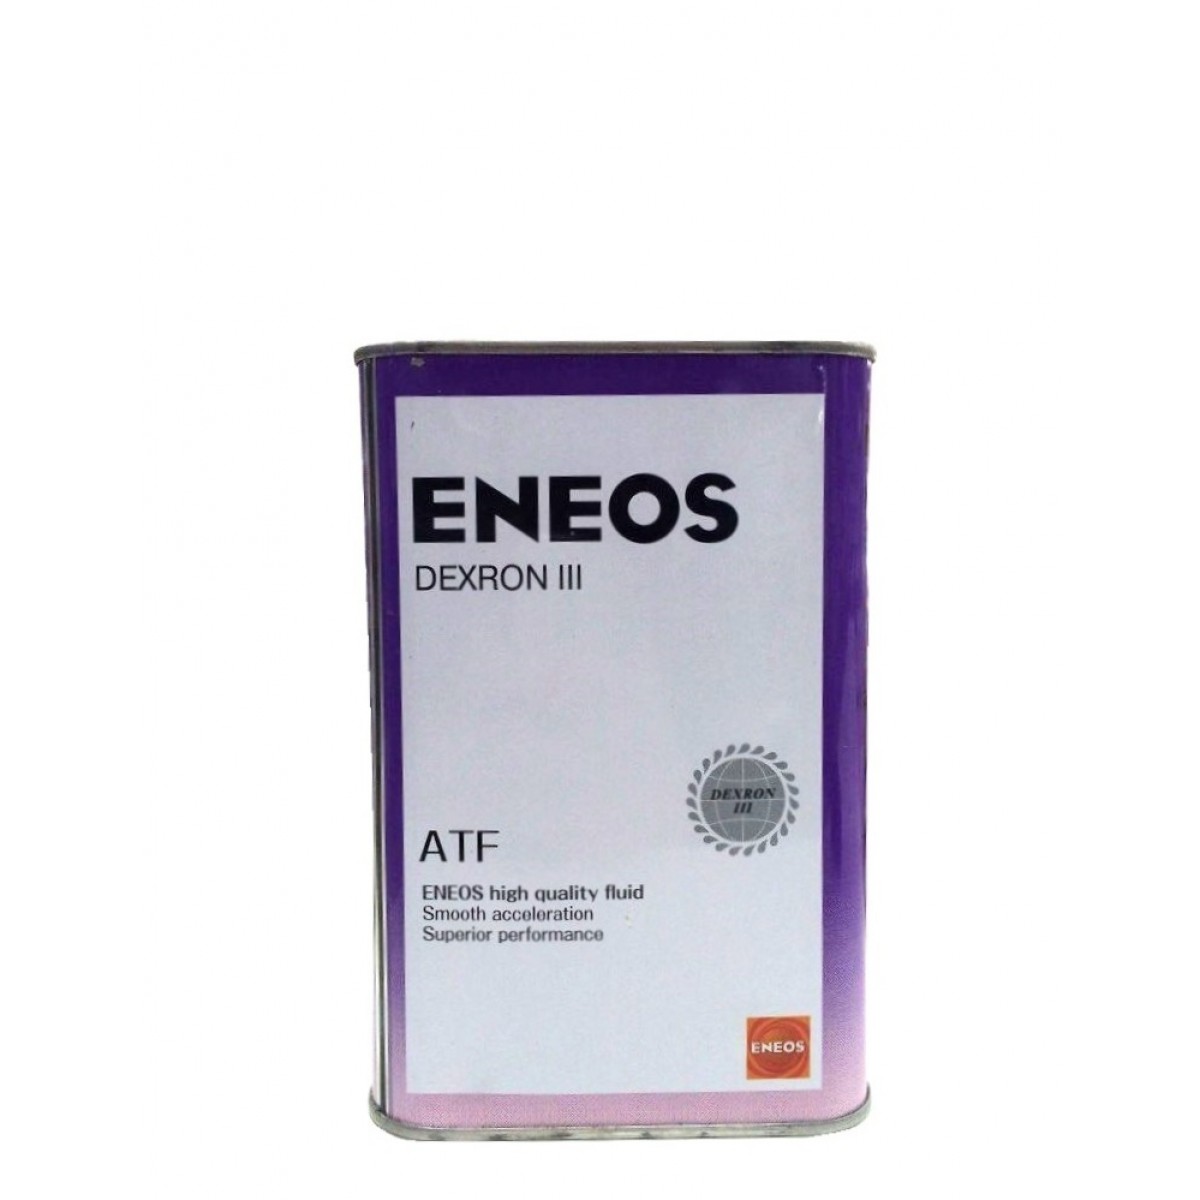 Eneos atf dexron. ENEOS ATF 3. ENEOS oil1305. ATF Dexron 3 енеос.